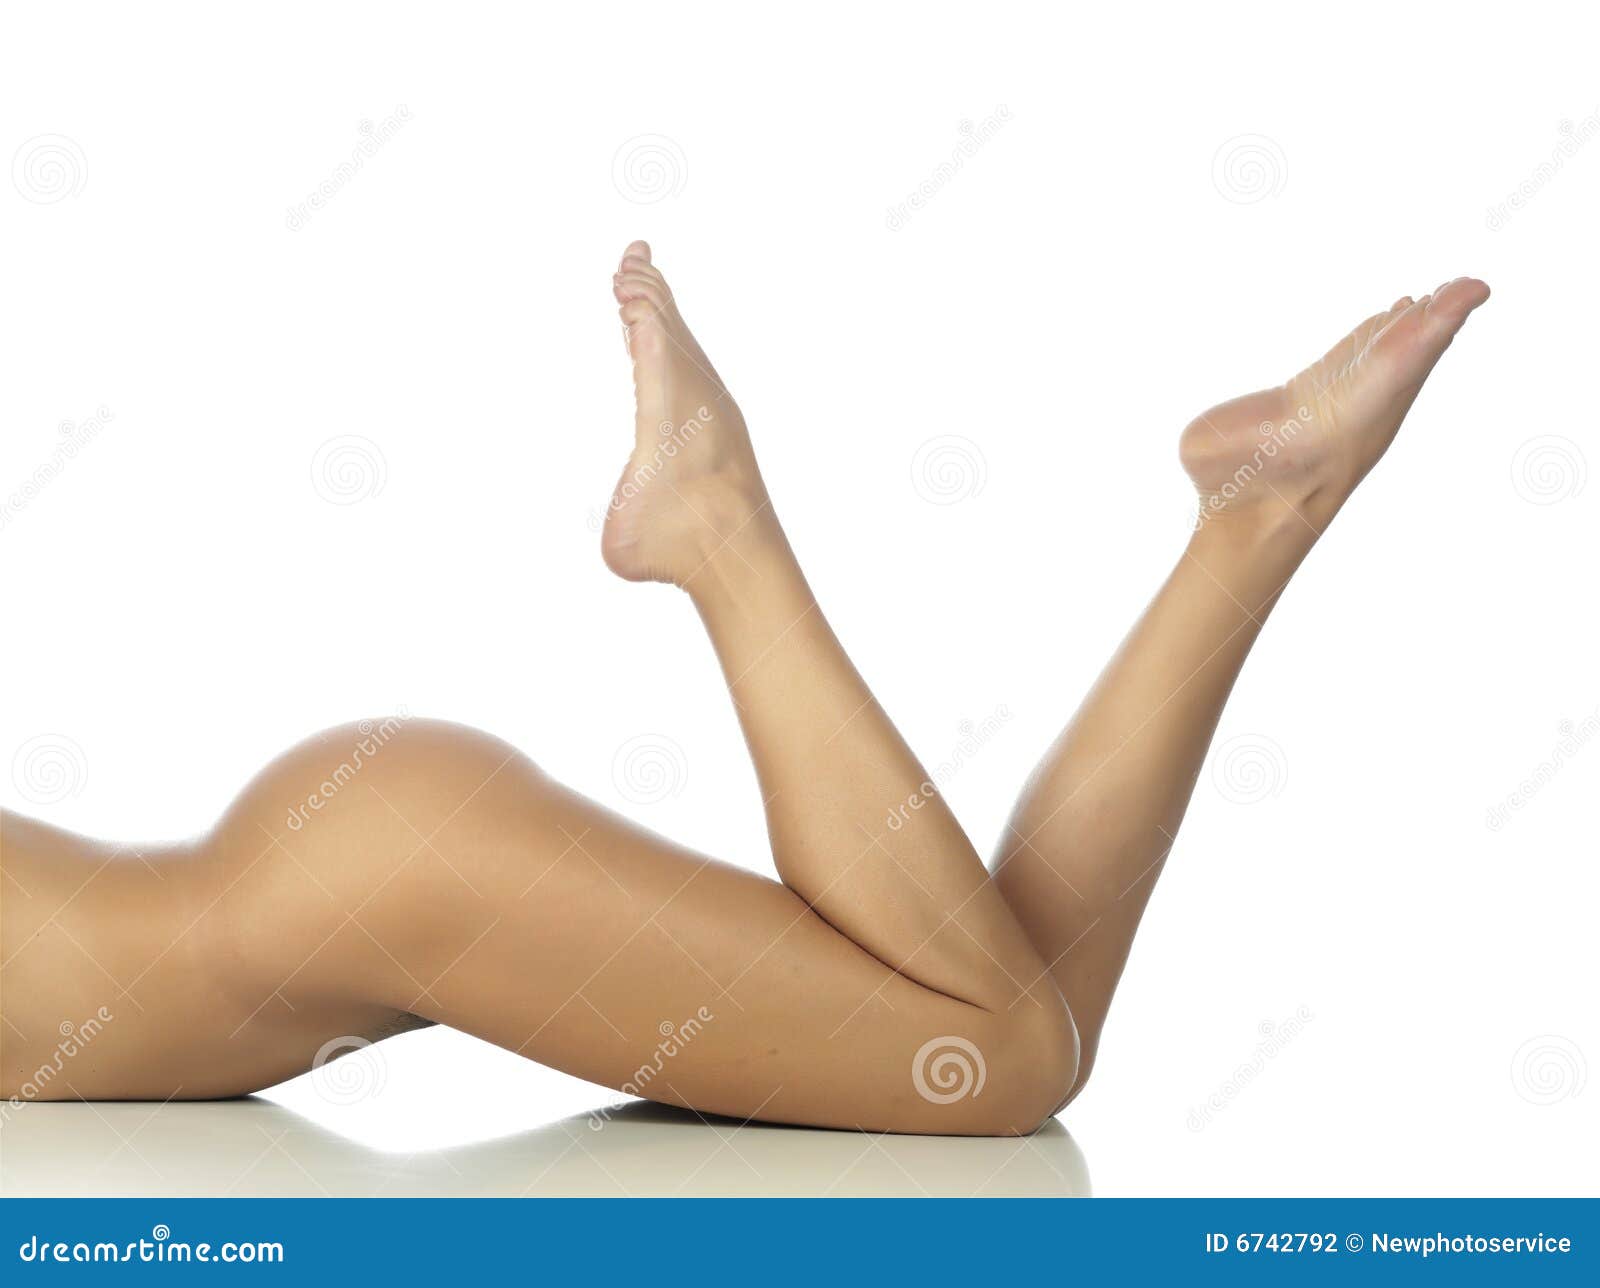 Female Legs Pics 54